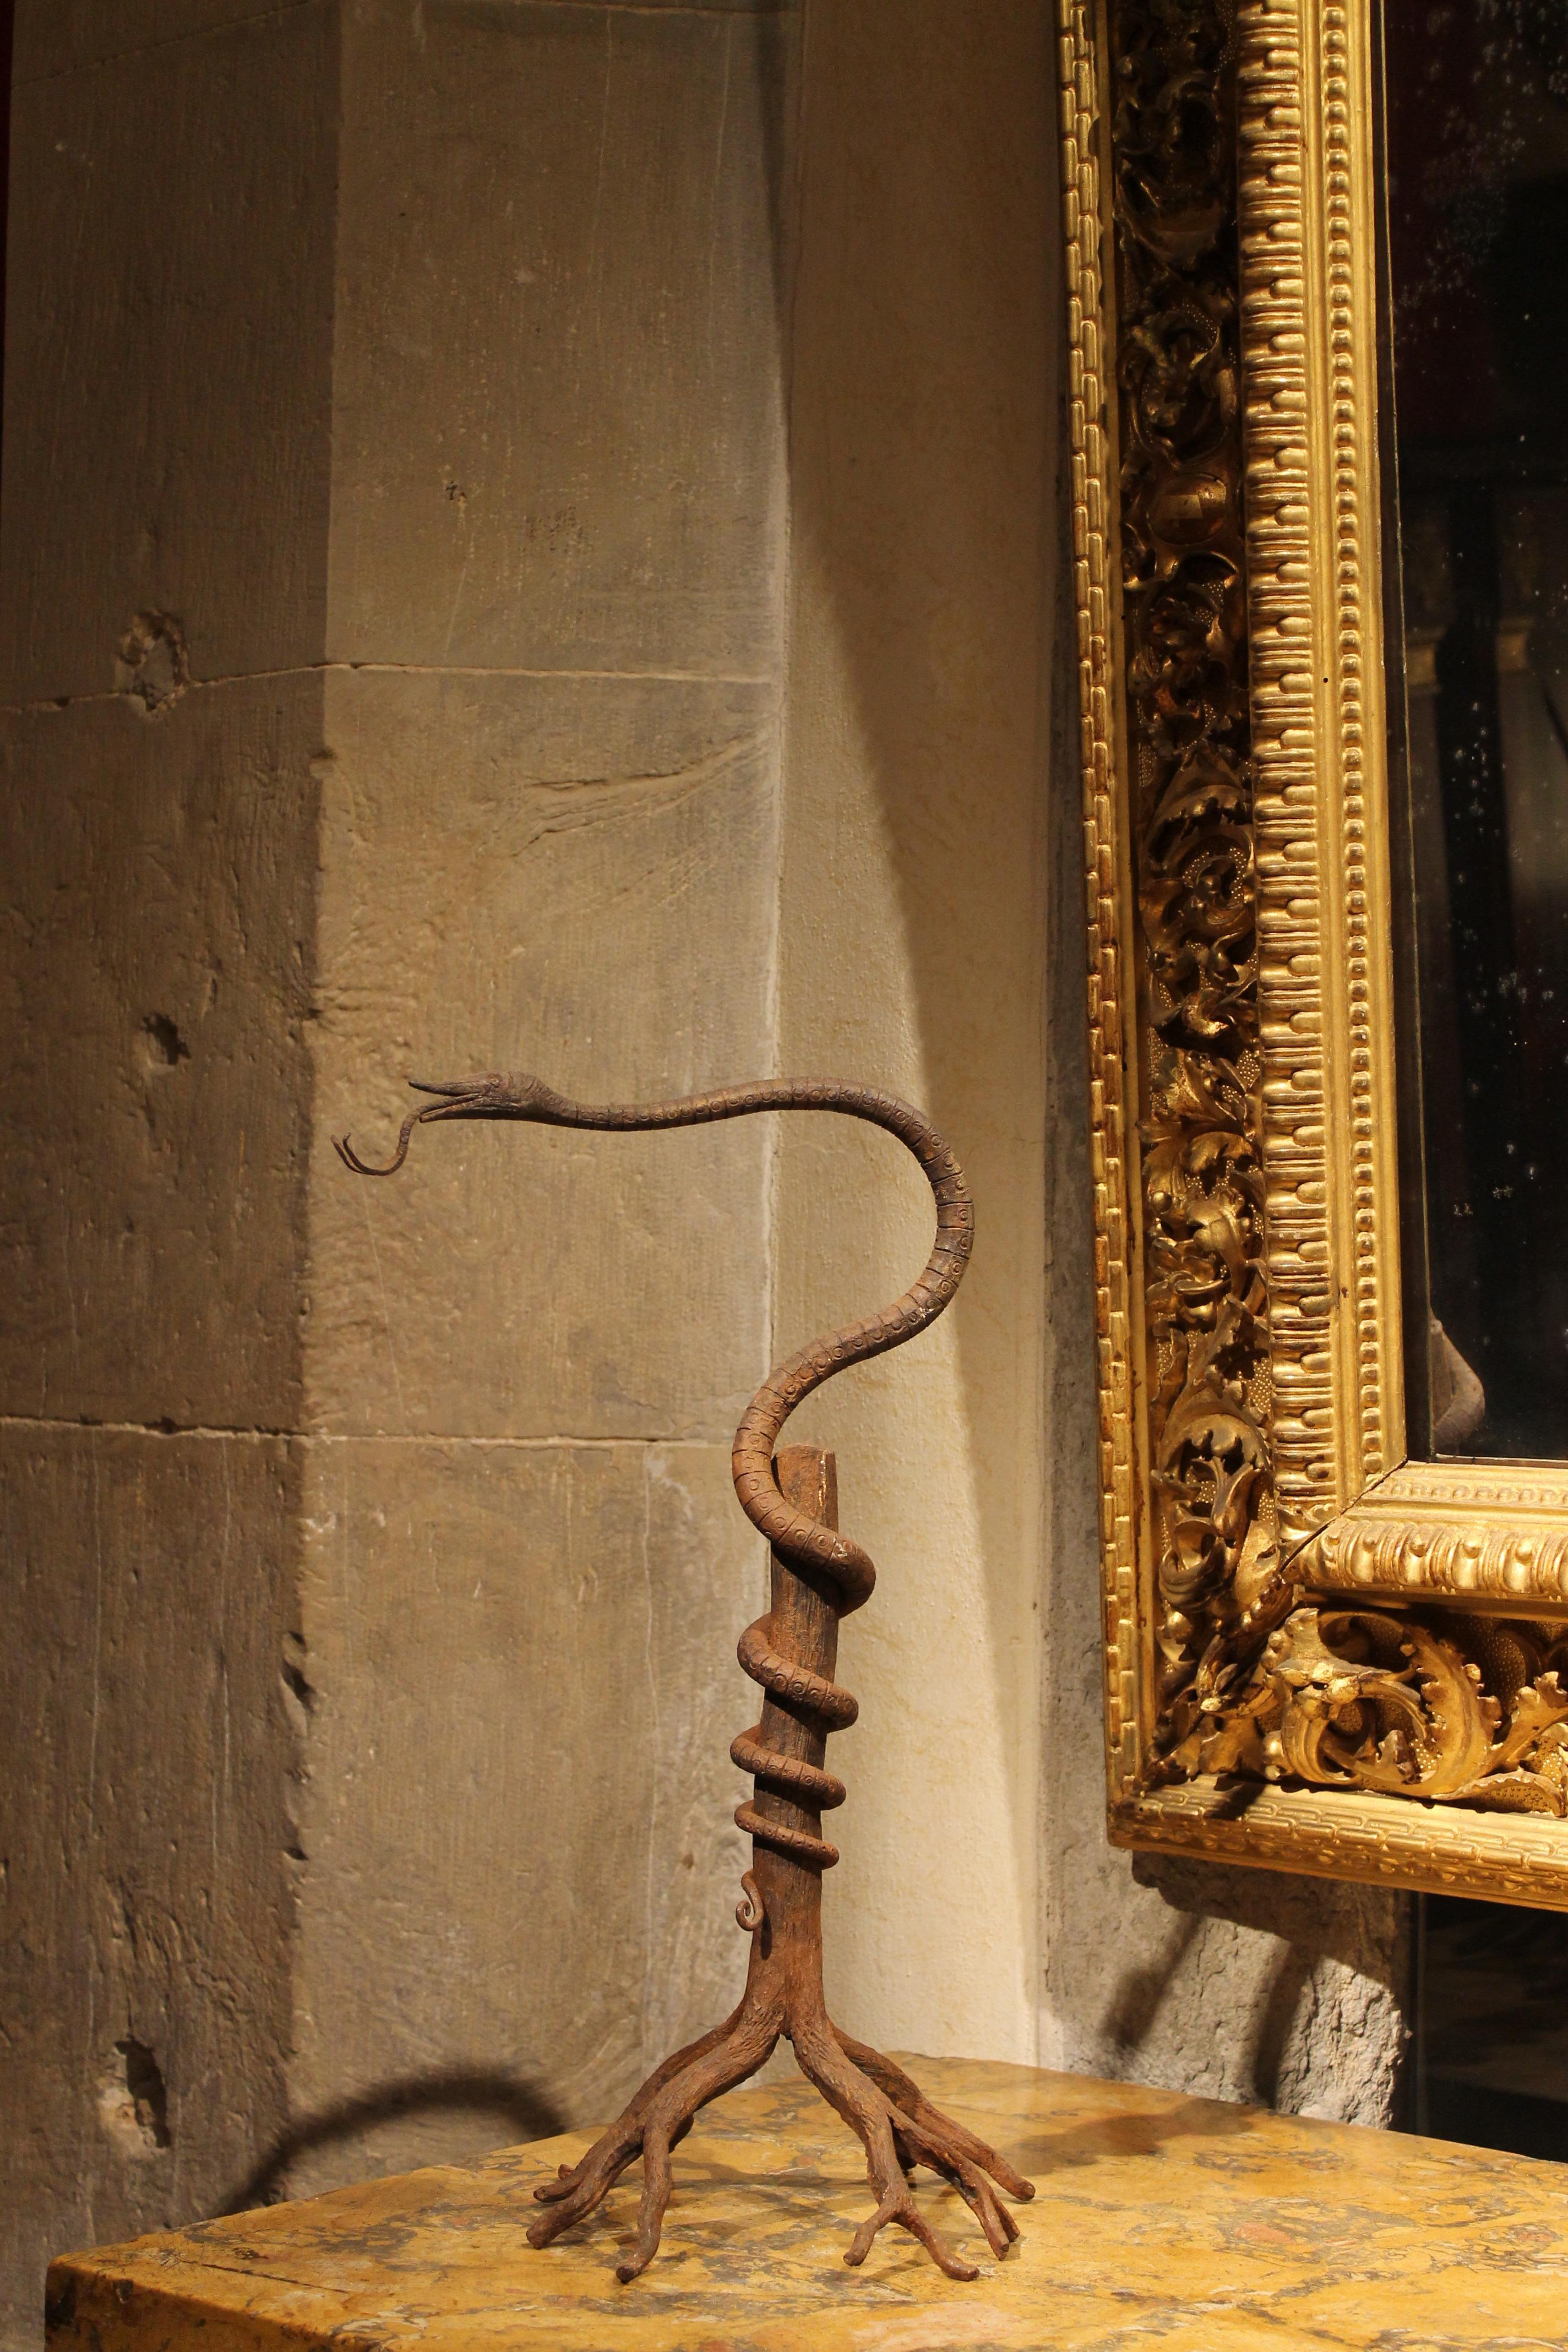 Eine meisterhaft geschmiedete europäische Jugendstil-Eisenskulptur in Form einer Schlange, die sich auf einem Baumstamm windet, ist ein wunderbares und originelles Dekorationselement, ein unterhaltsames Kunstwerk, eine ungewöhnliche antike